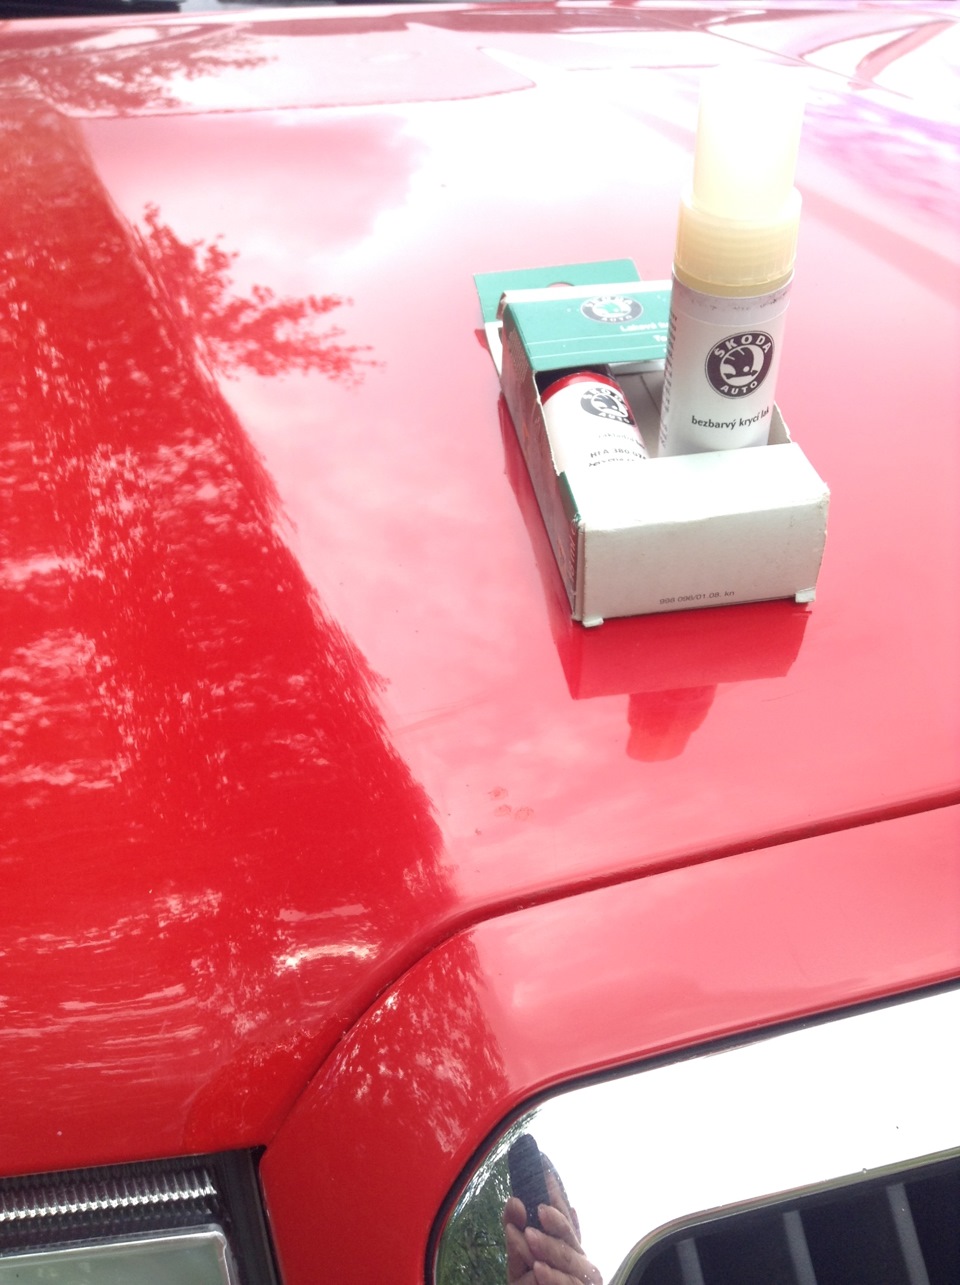 Как правильно закрашивать сколы на автомобиле. Подкраска сколов Skoda Octavia. Покраска сколов на автомобиле. Краска для закрашивания сколов на автомобиле. Подкраска сколов лаком на авто.